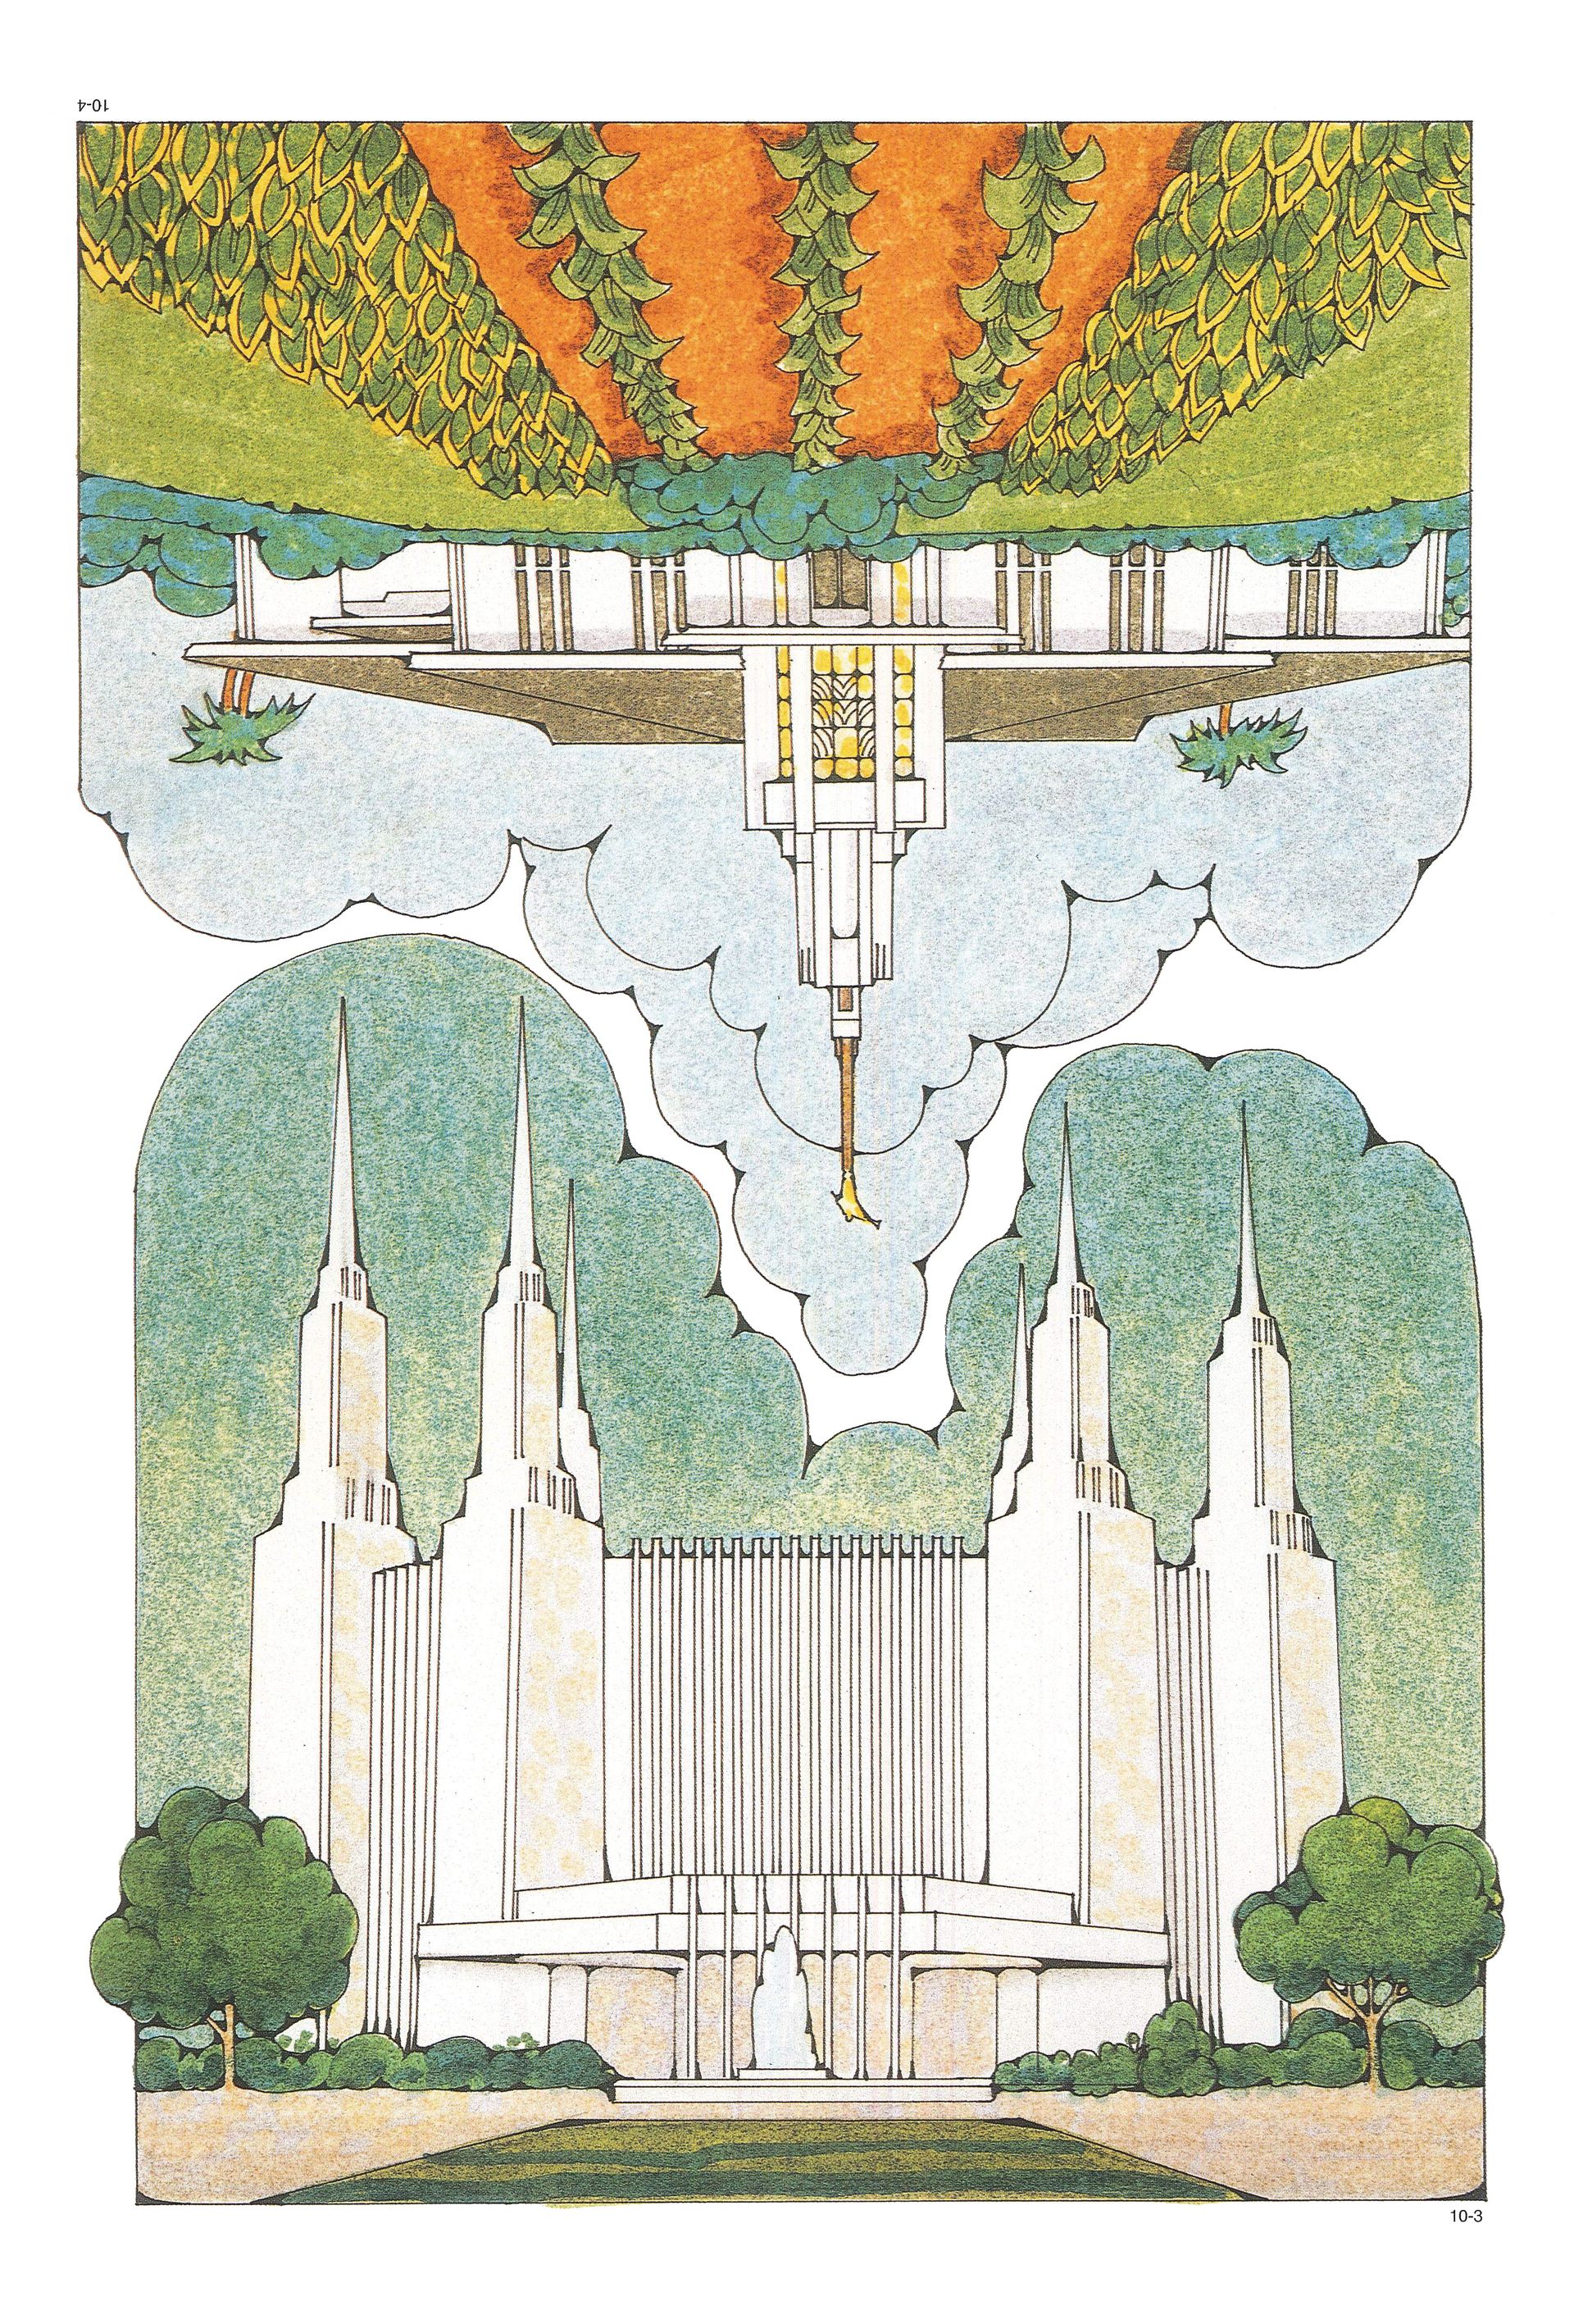 Primary Visual Aids: Cutouts 10-3, Washington D.C. Temple; 10-4, Apia Samoa Temple.